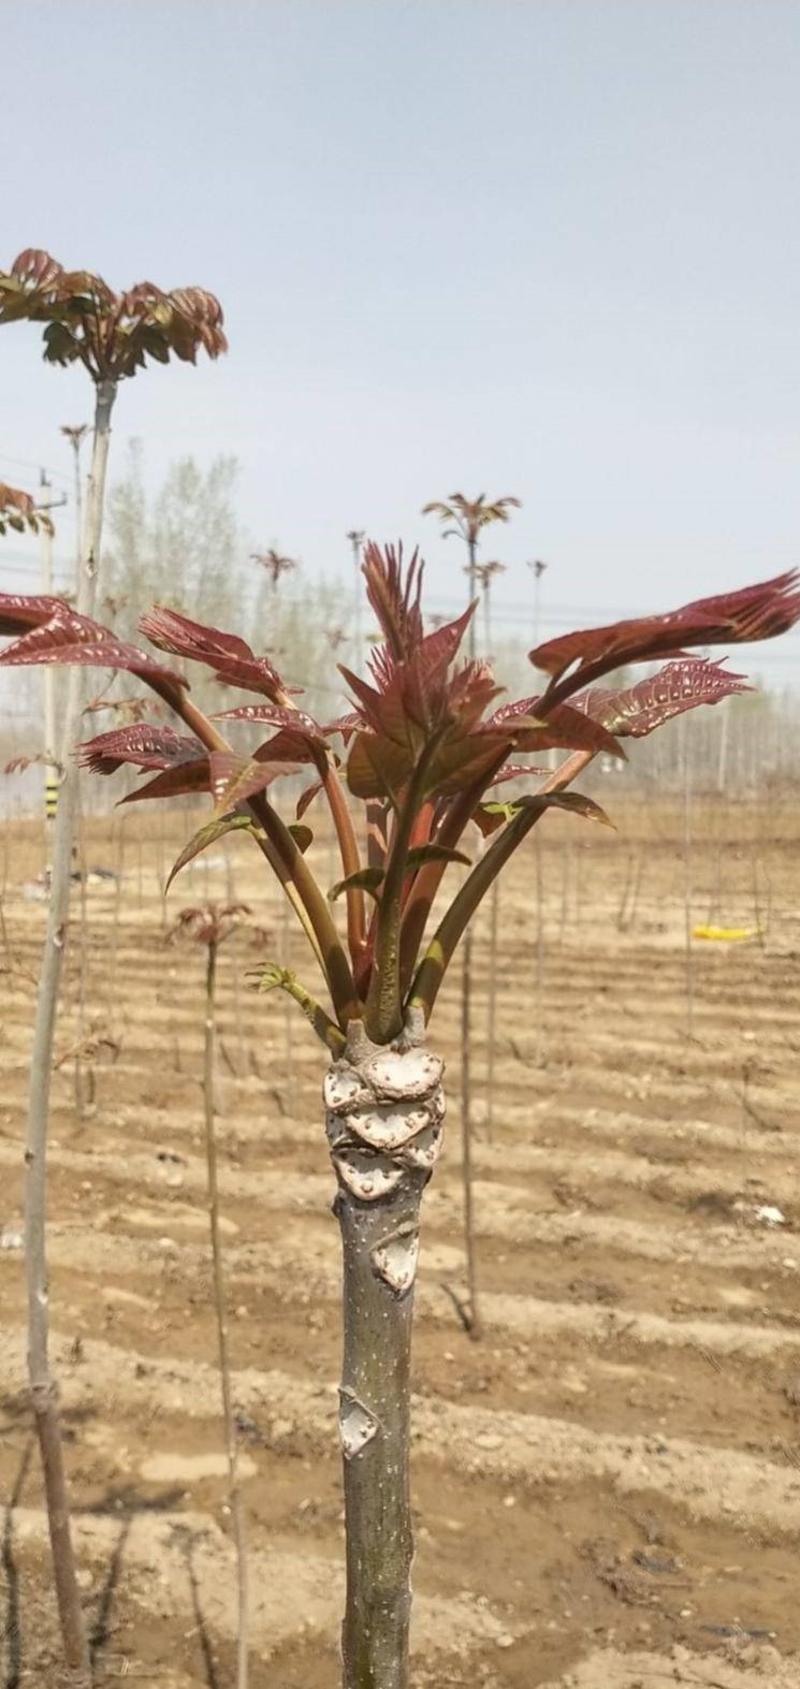 红香椿苗根系发达丰产性好现挖保湿发货